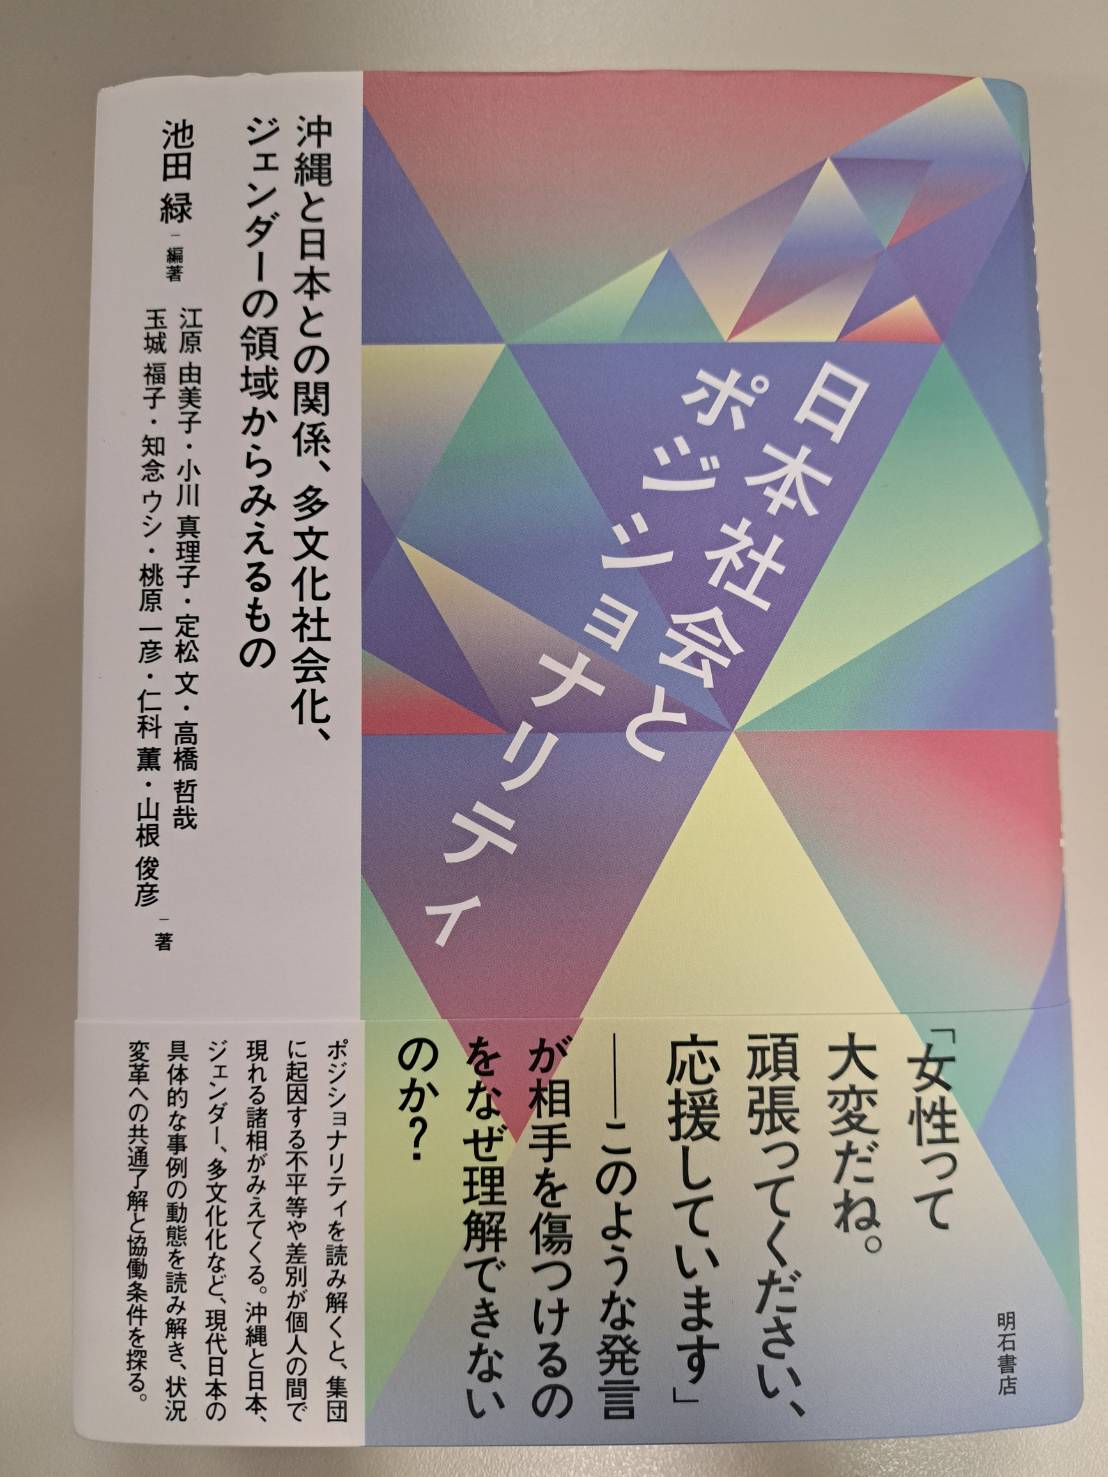 江原由美子先生と山根俊彦博士が分担執筆した『日本社会とポジショナリティ：沖縄と日本との関係、多文化社会化、ジェンダーの領域からみえるもの』が出版されました。